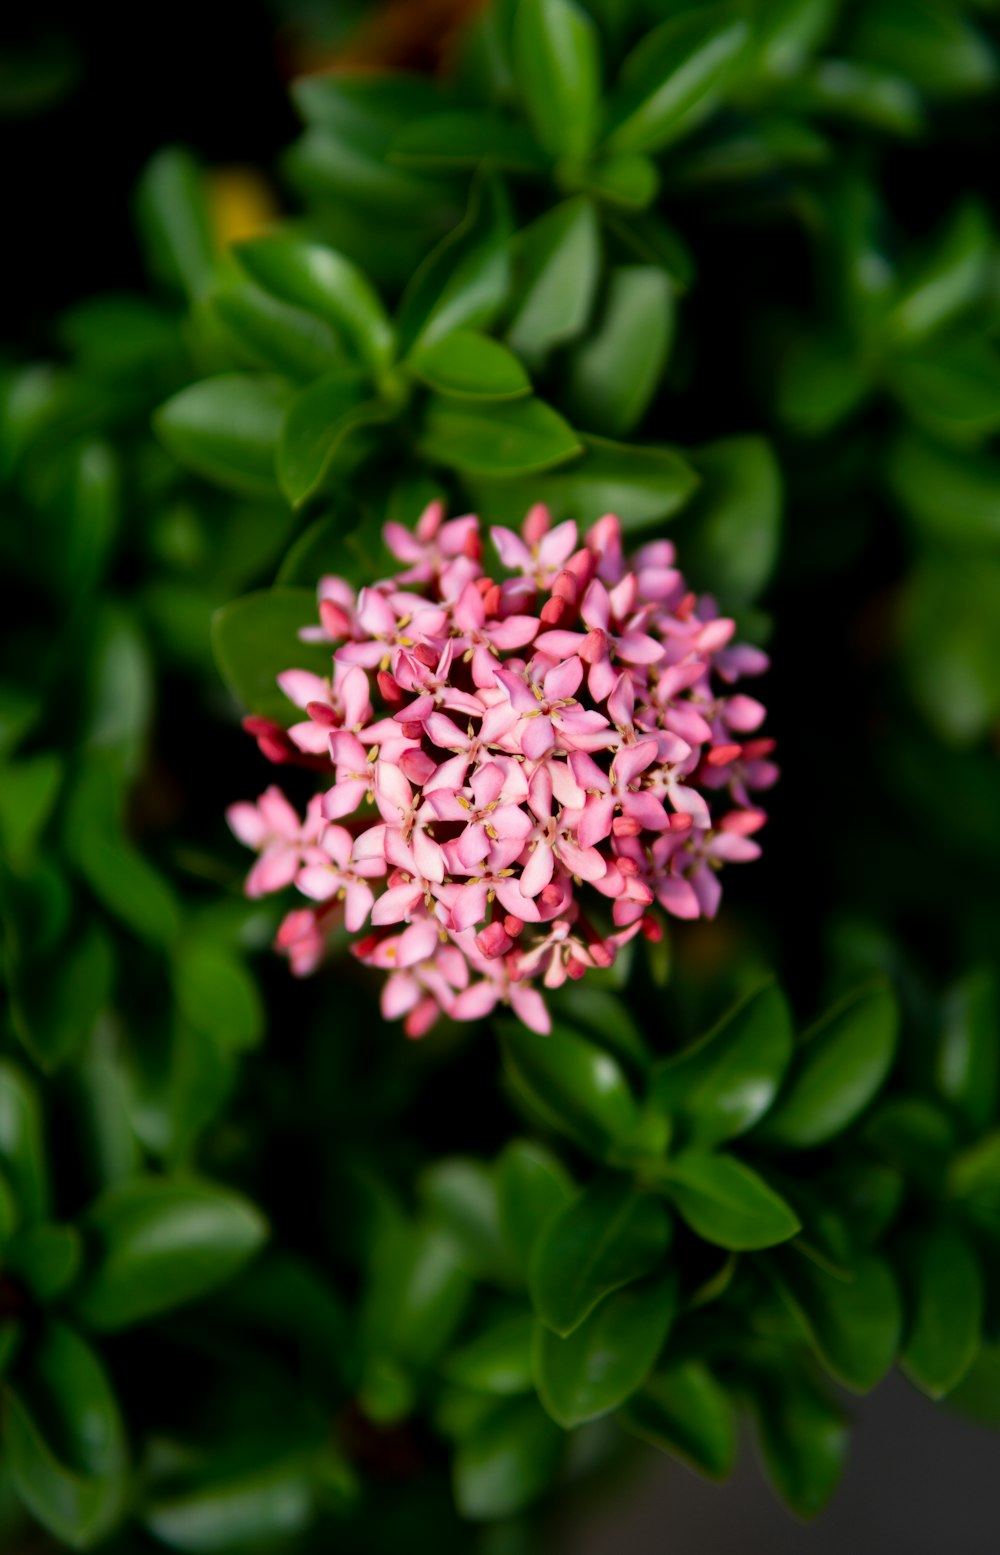 um close up de uma flor rosa cercada por folhas verdes